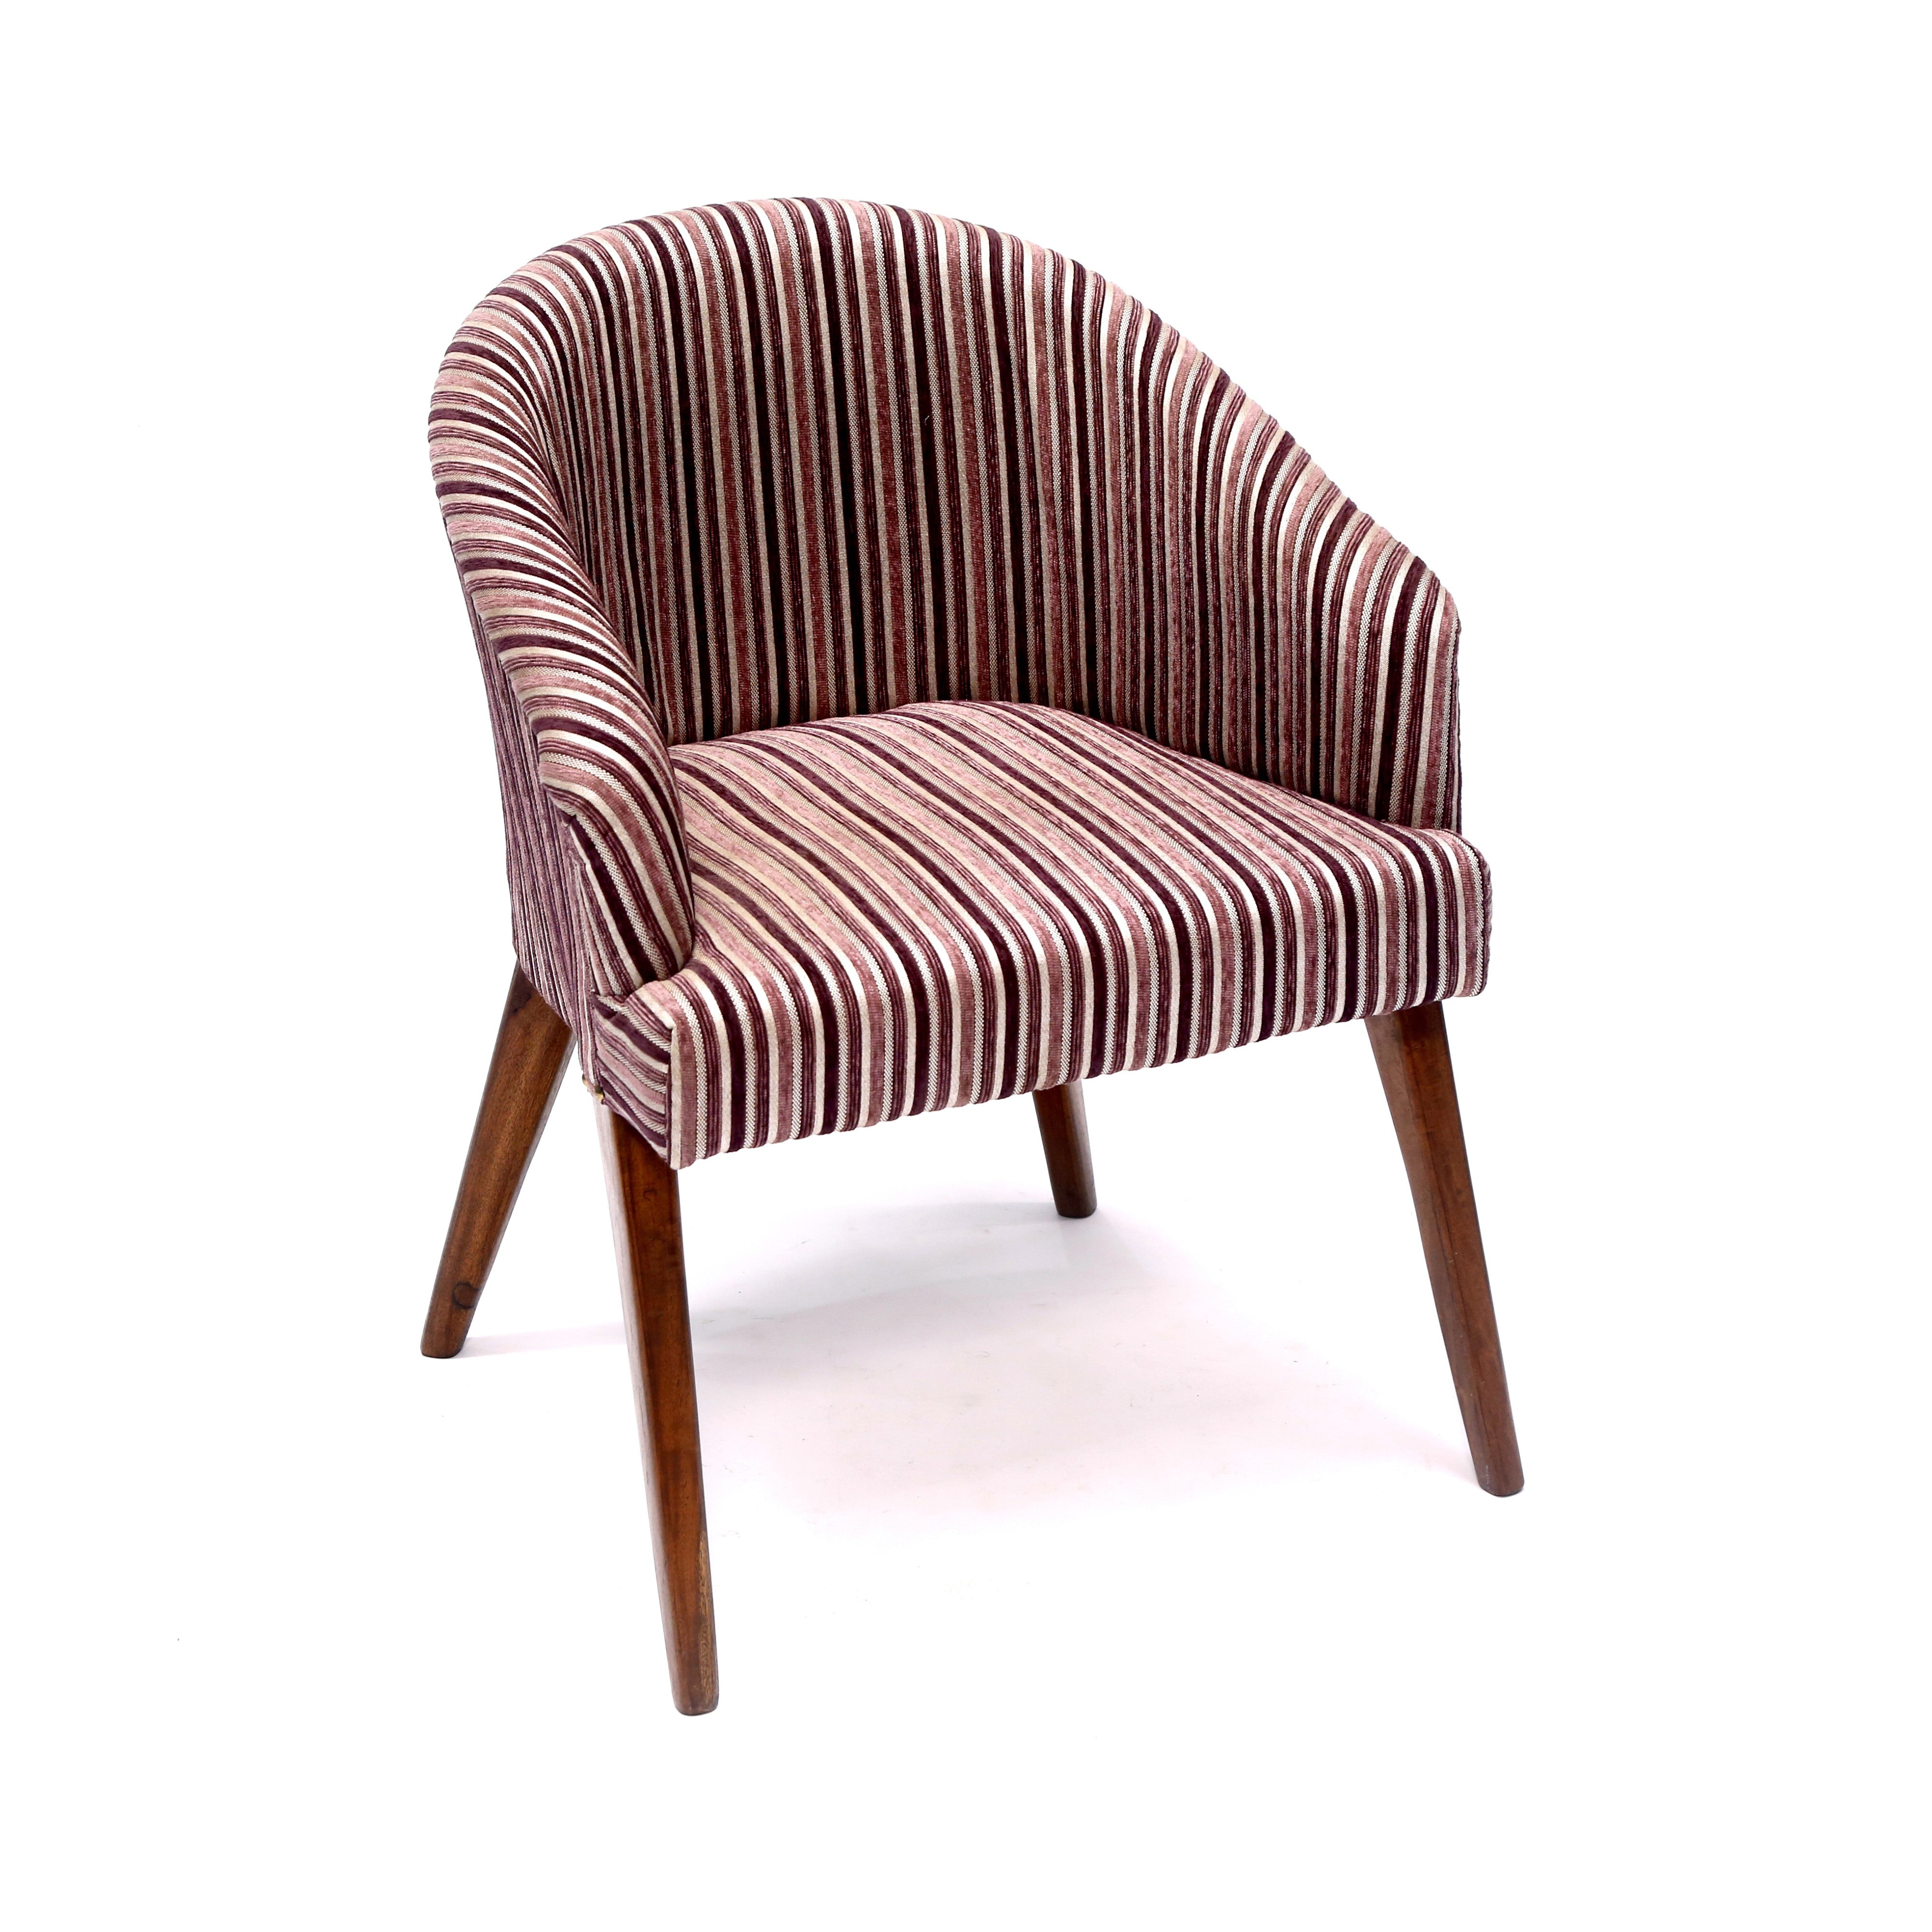 Retro Style Striped Arm Chair Arm Chair